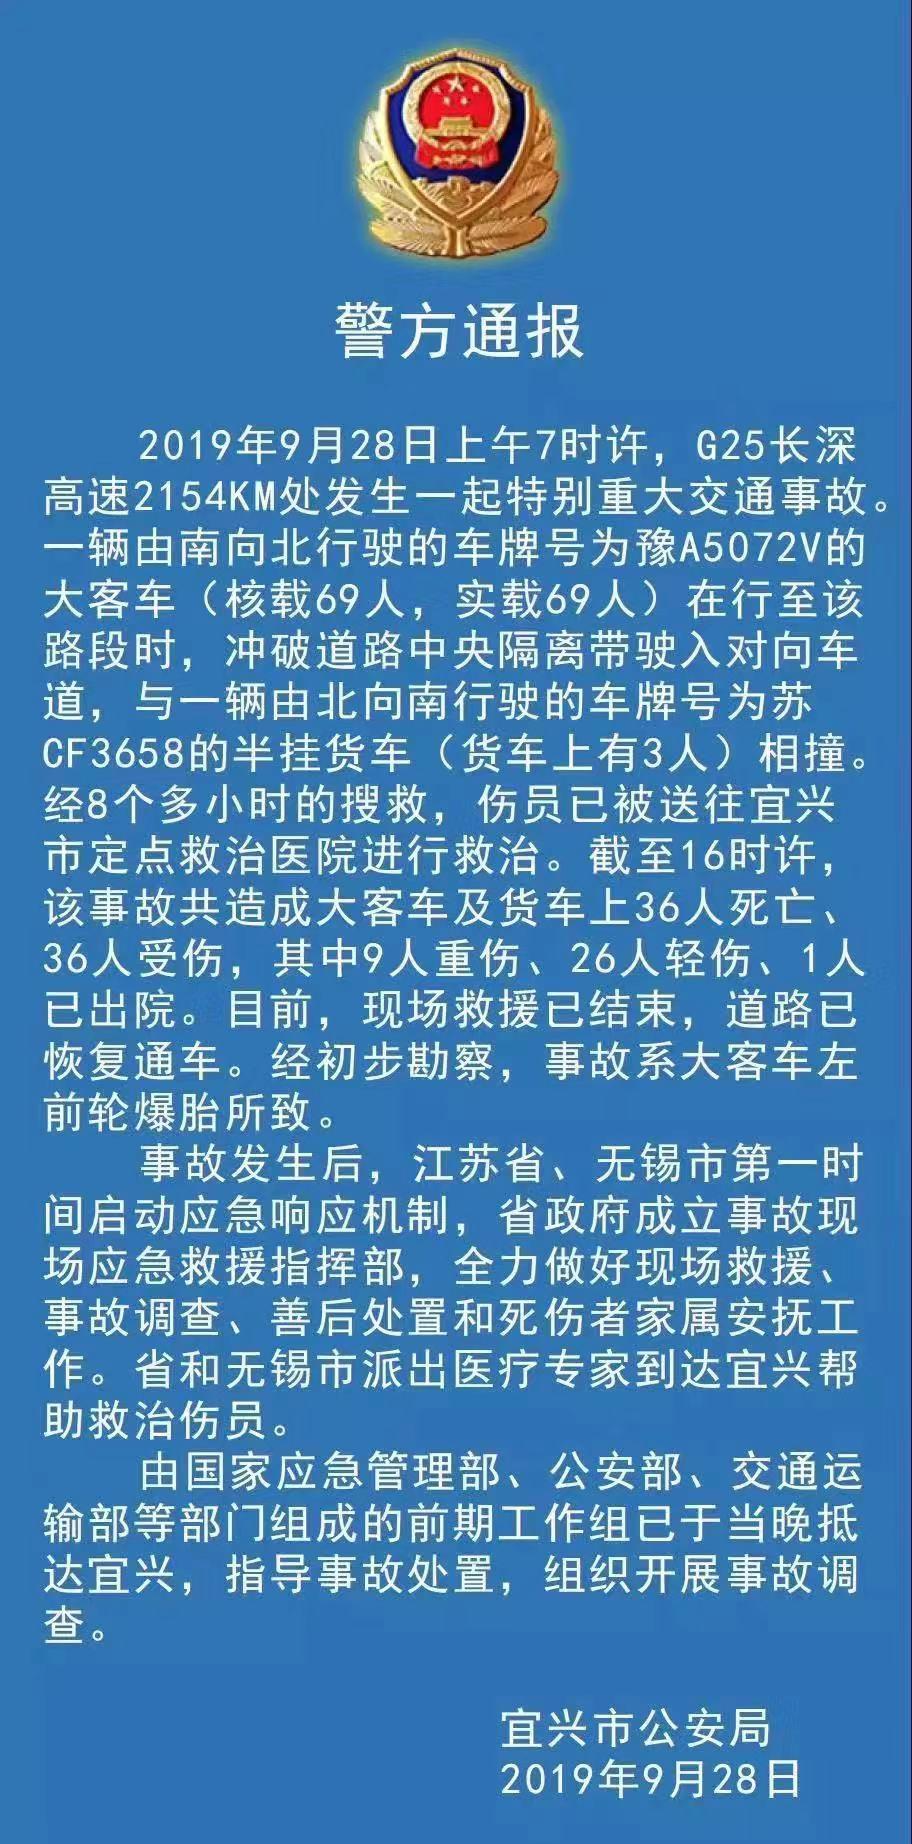 江苏宜兴警方通报长深高速特别重大交通事故最新进展